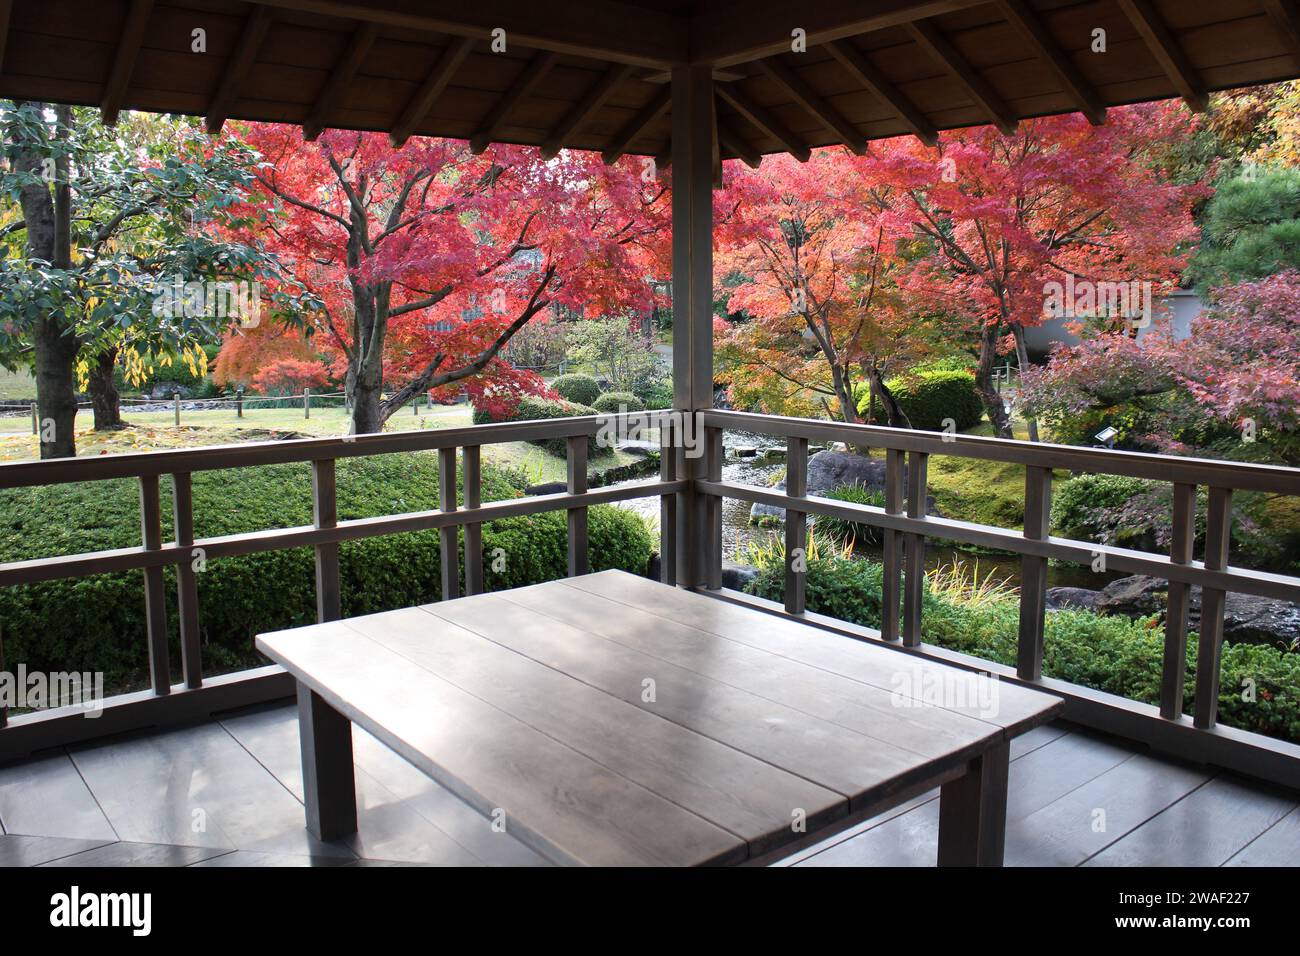 Autumn leaves in Flatly Landscaped Garden in Koko-en Garden, Himeji, Japan Stock Photo